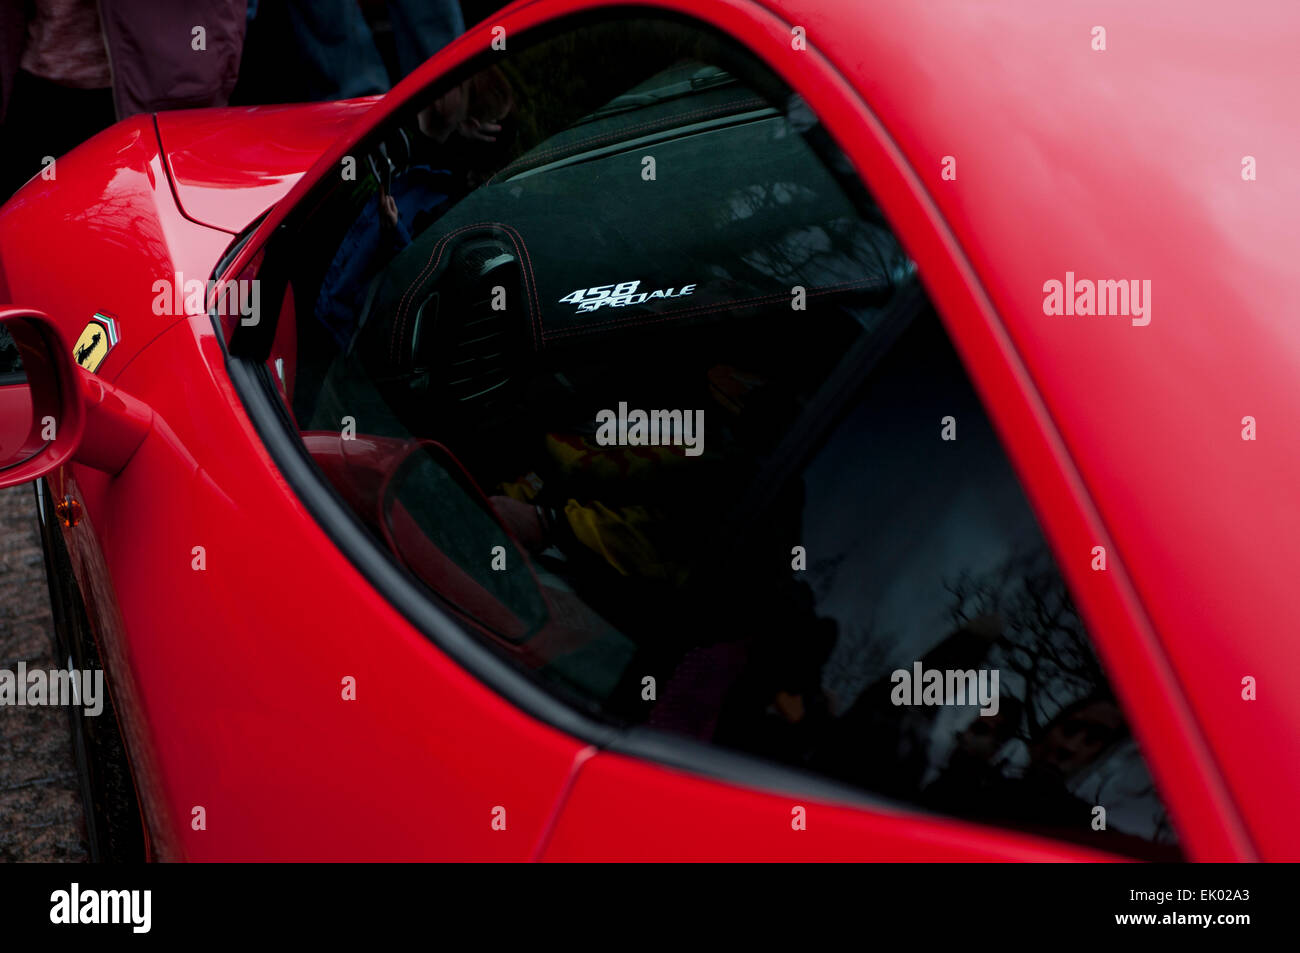 Ferrari automobile - side view Stock Photo